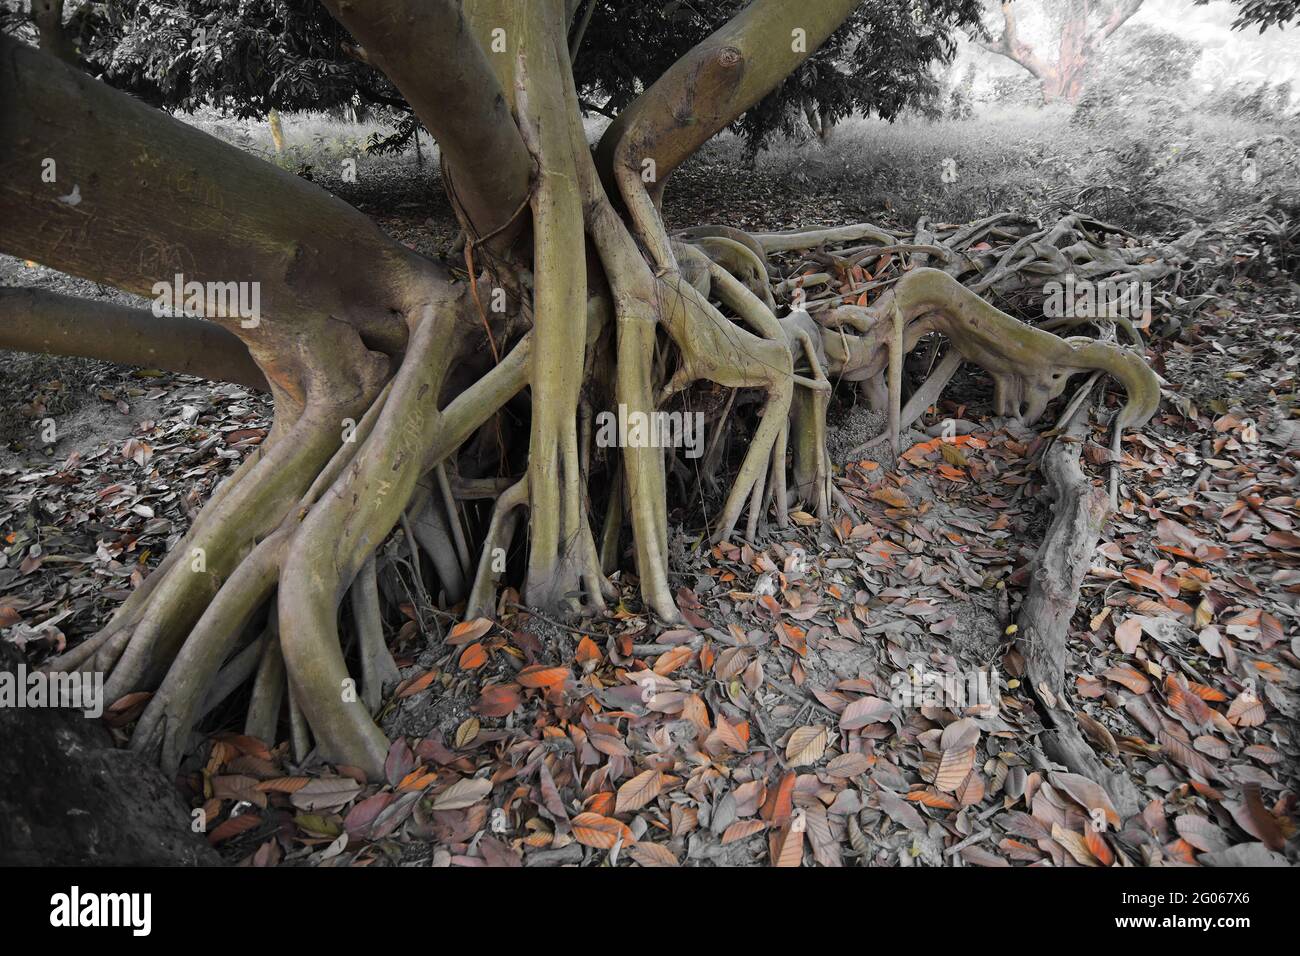 Des feuilles sèches se trouvant encore sur le sol à côté d'énormes racines d'arbres dans une forêt, belle scène matinale d'hiver.Perspective de disparition dans le brouillard du côté droit. Banque D'Images